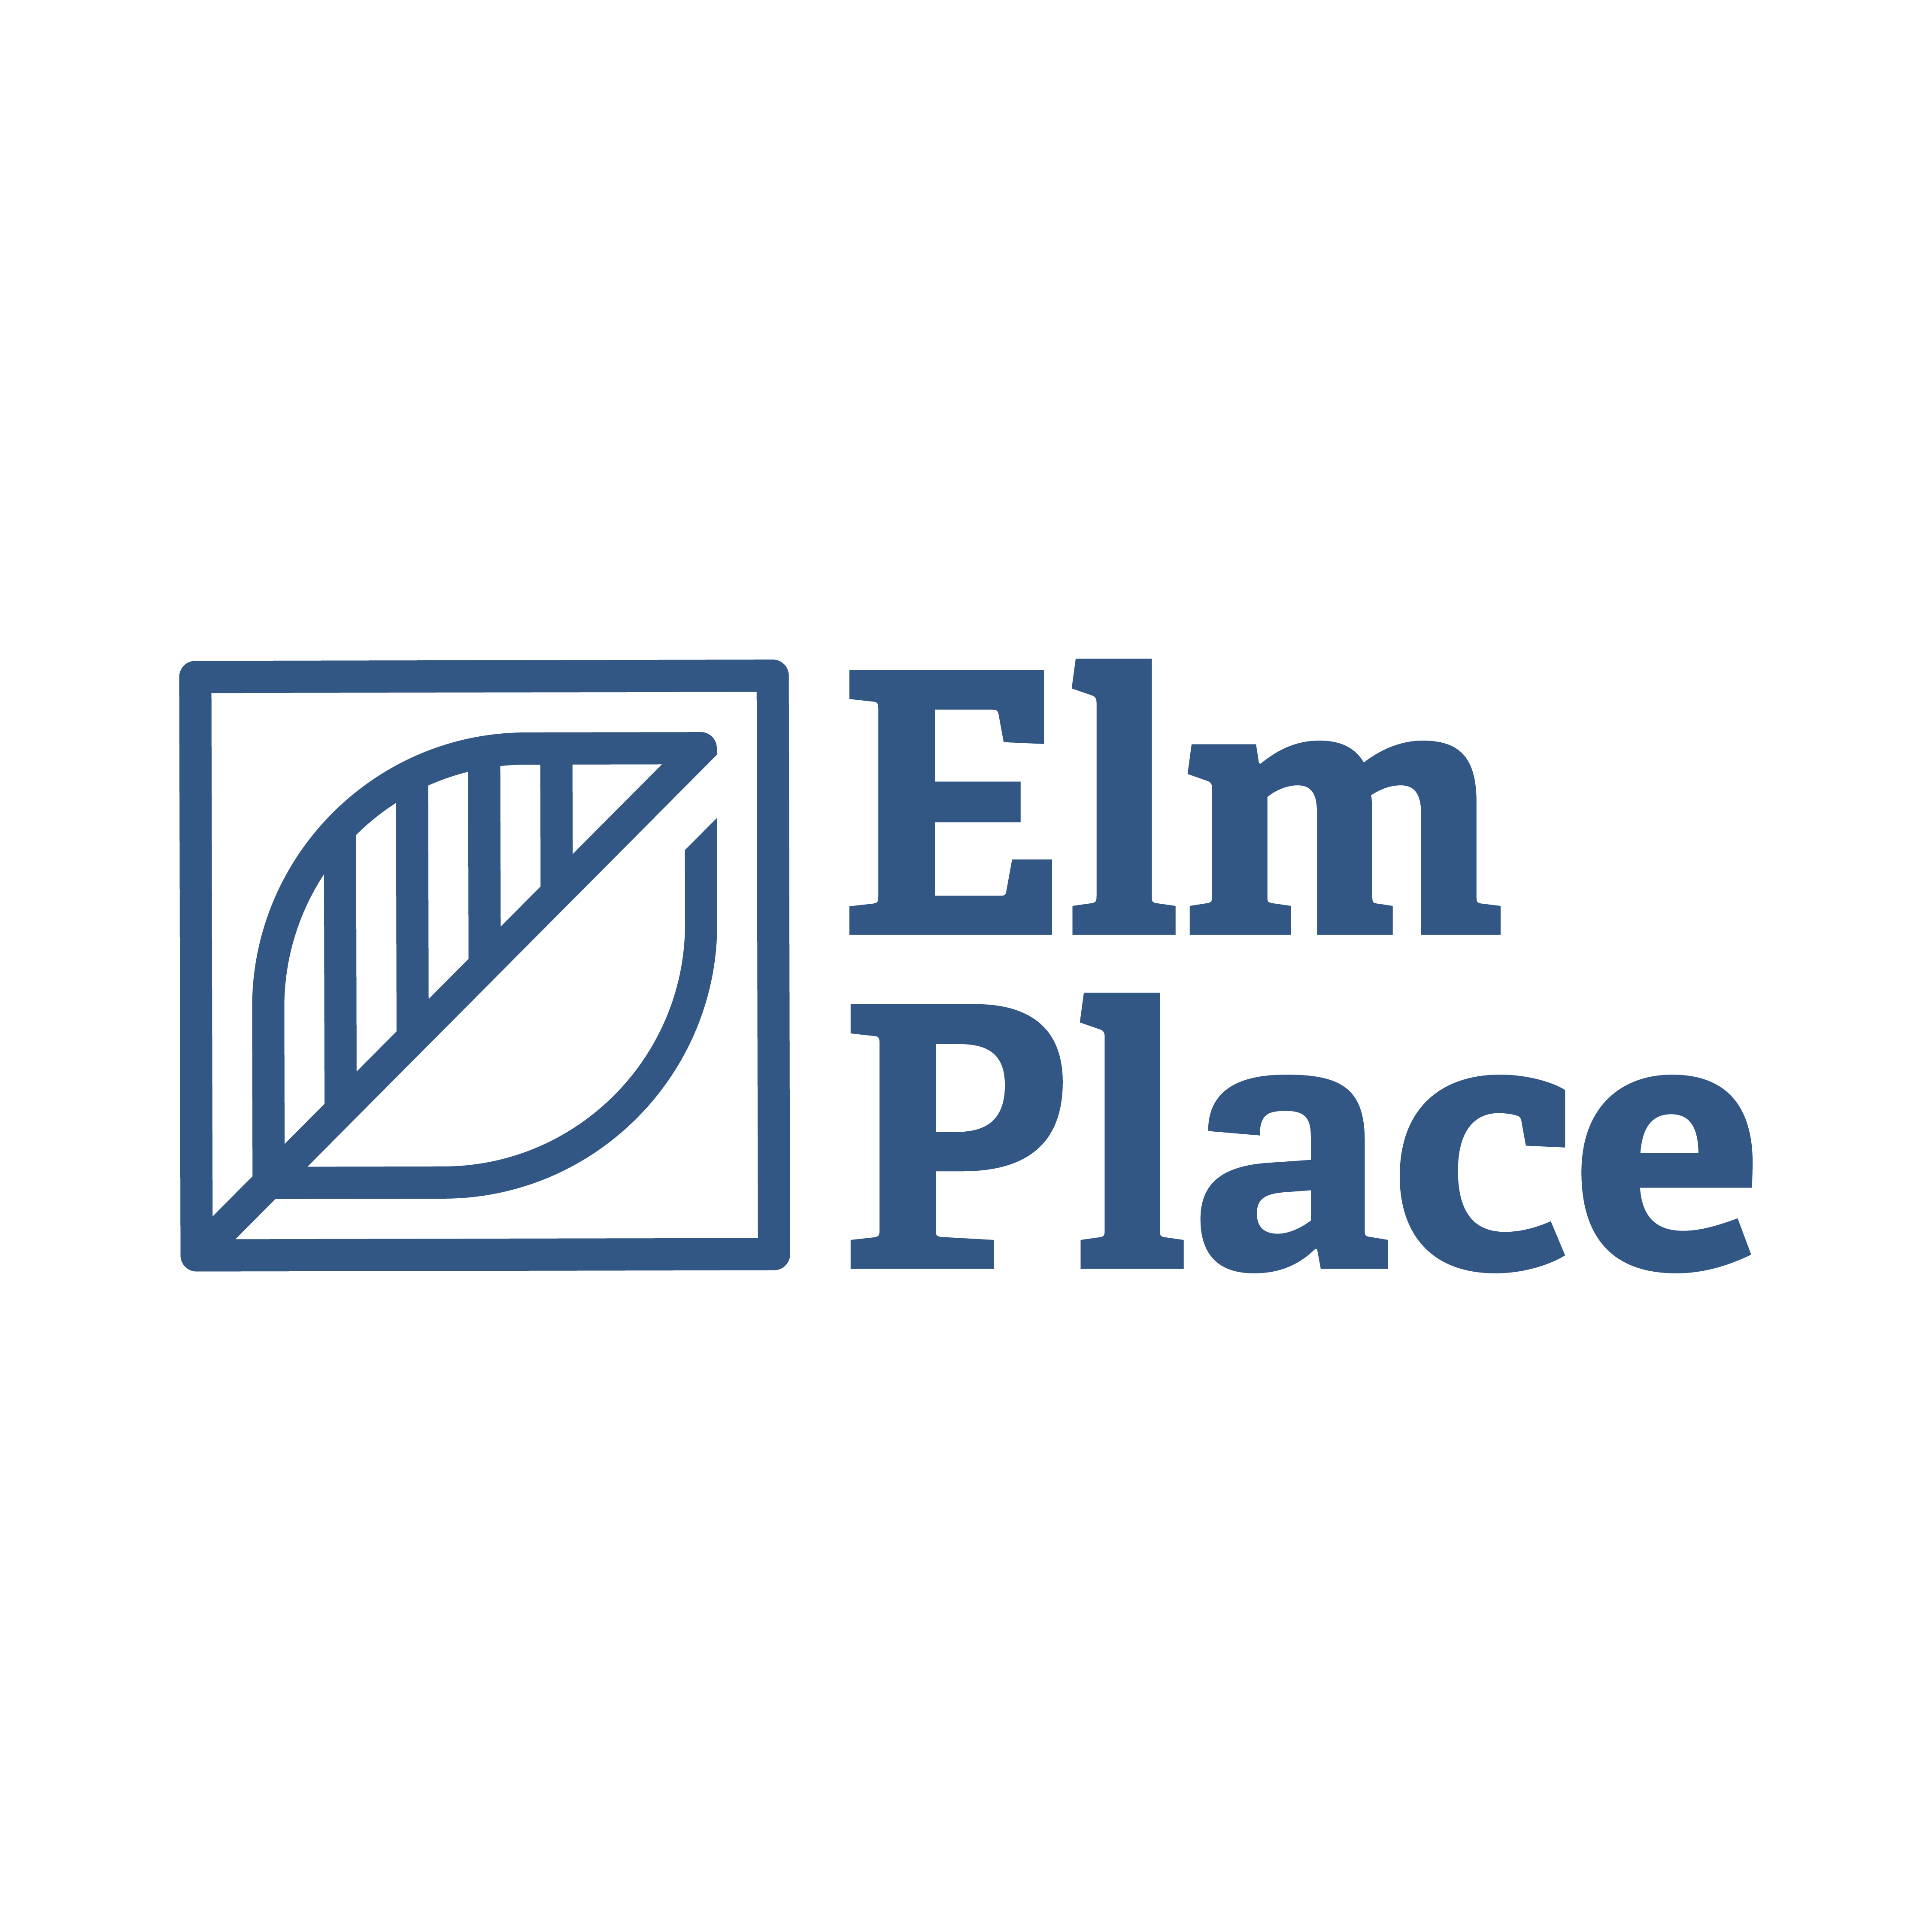 Elm Place